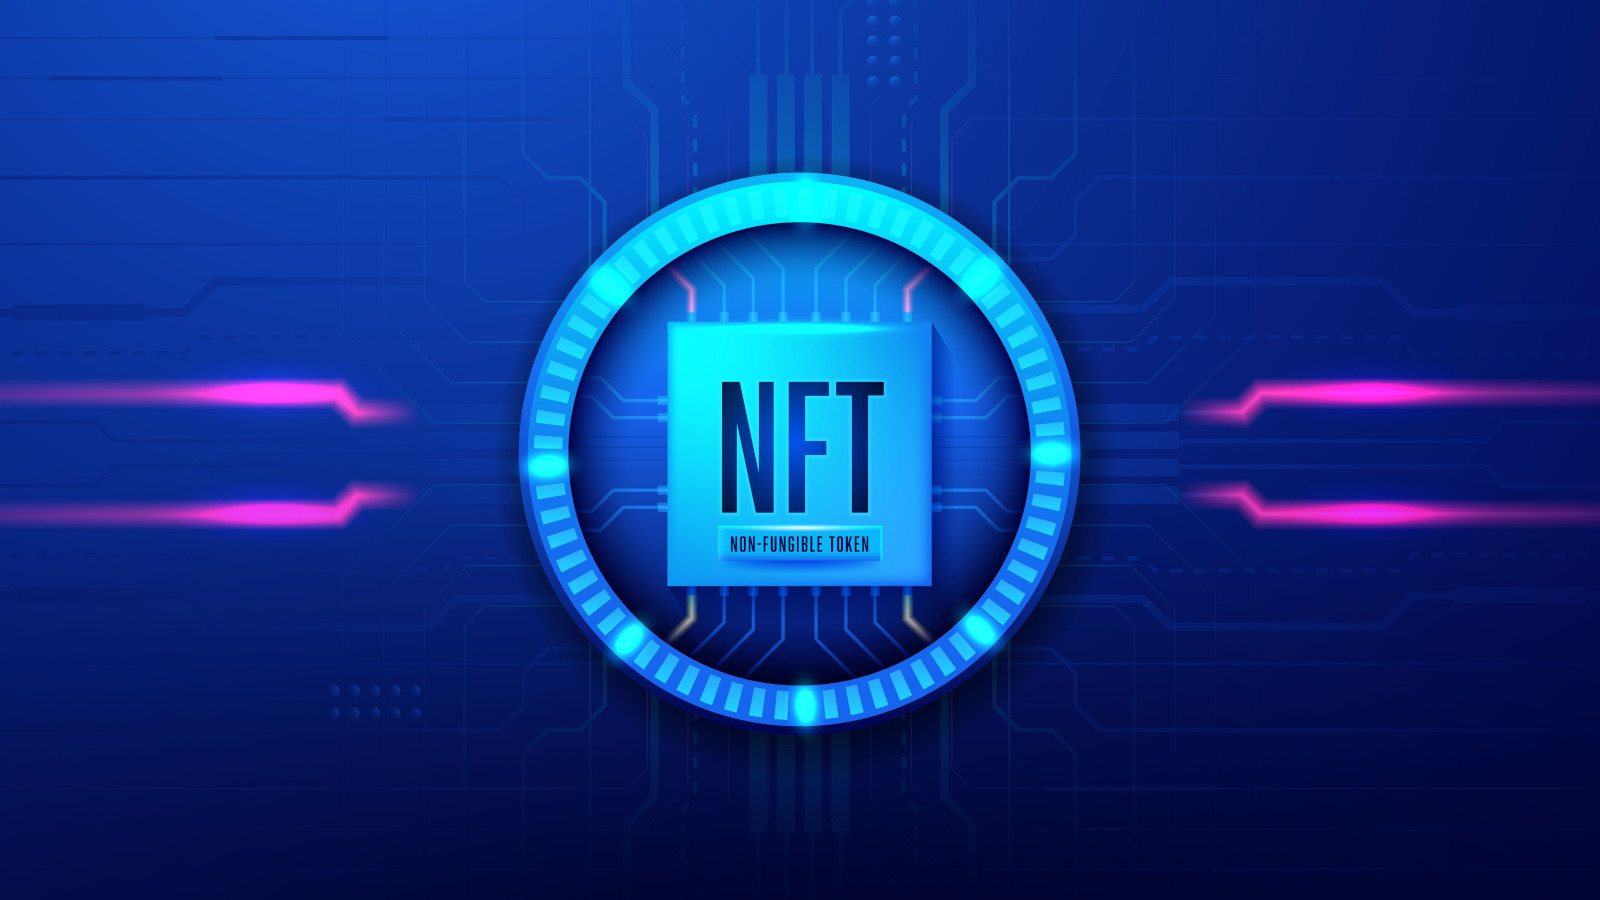 这是一张描绘非同质化代币（NFT）的图片，展示了蓝色调的NFT标志，背景是充满数字感的电路板图案。